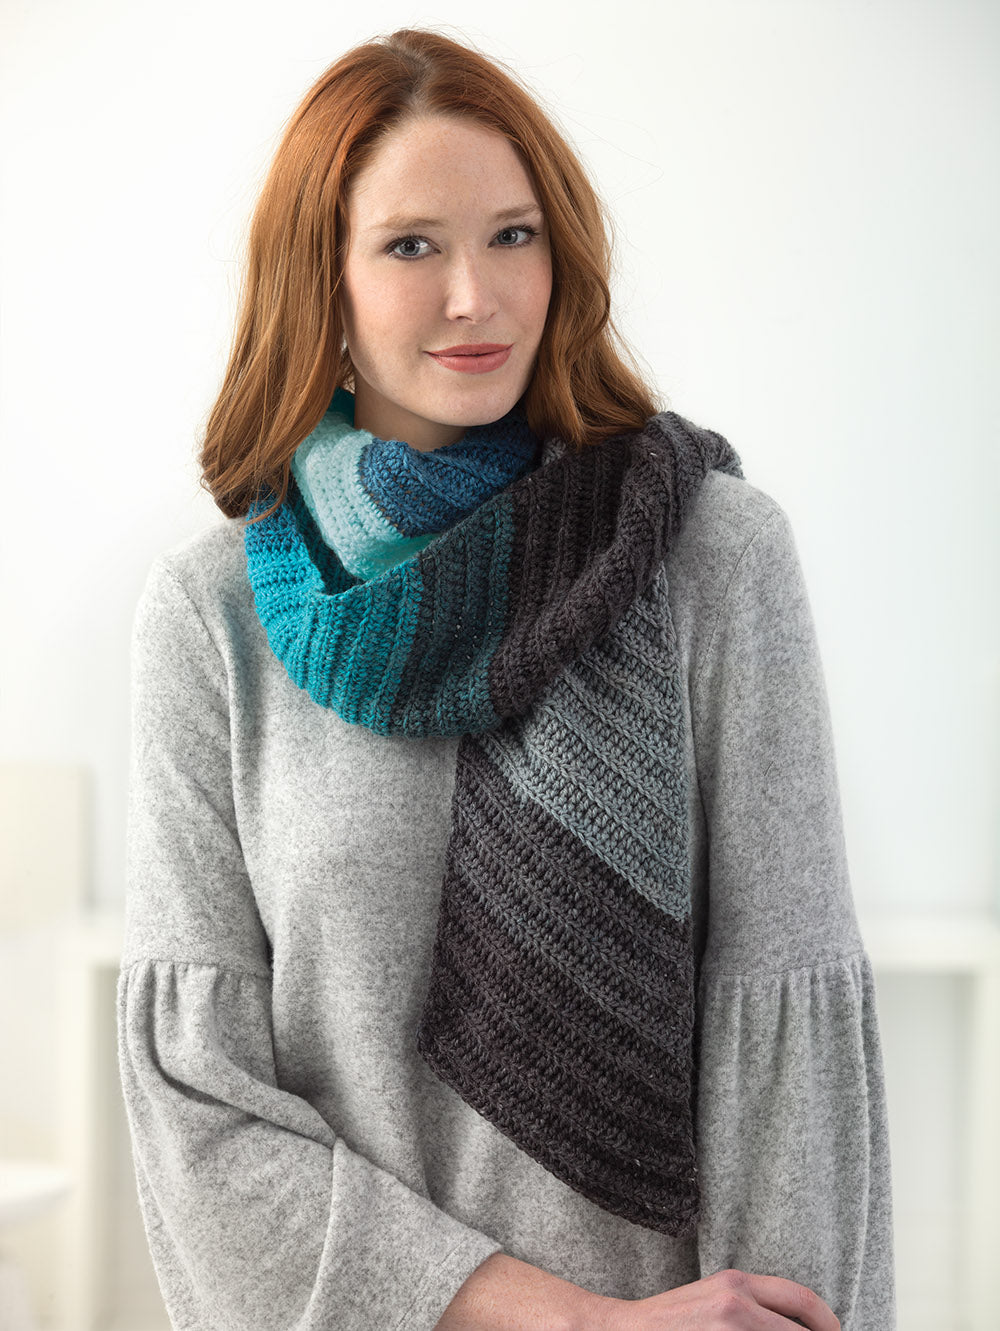 Shaded Diagonal Scarf (Crochet) – Lion Brand Yarn